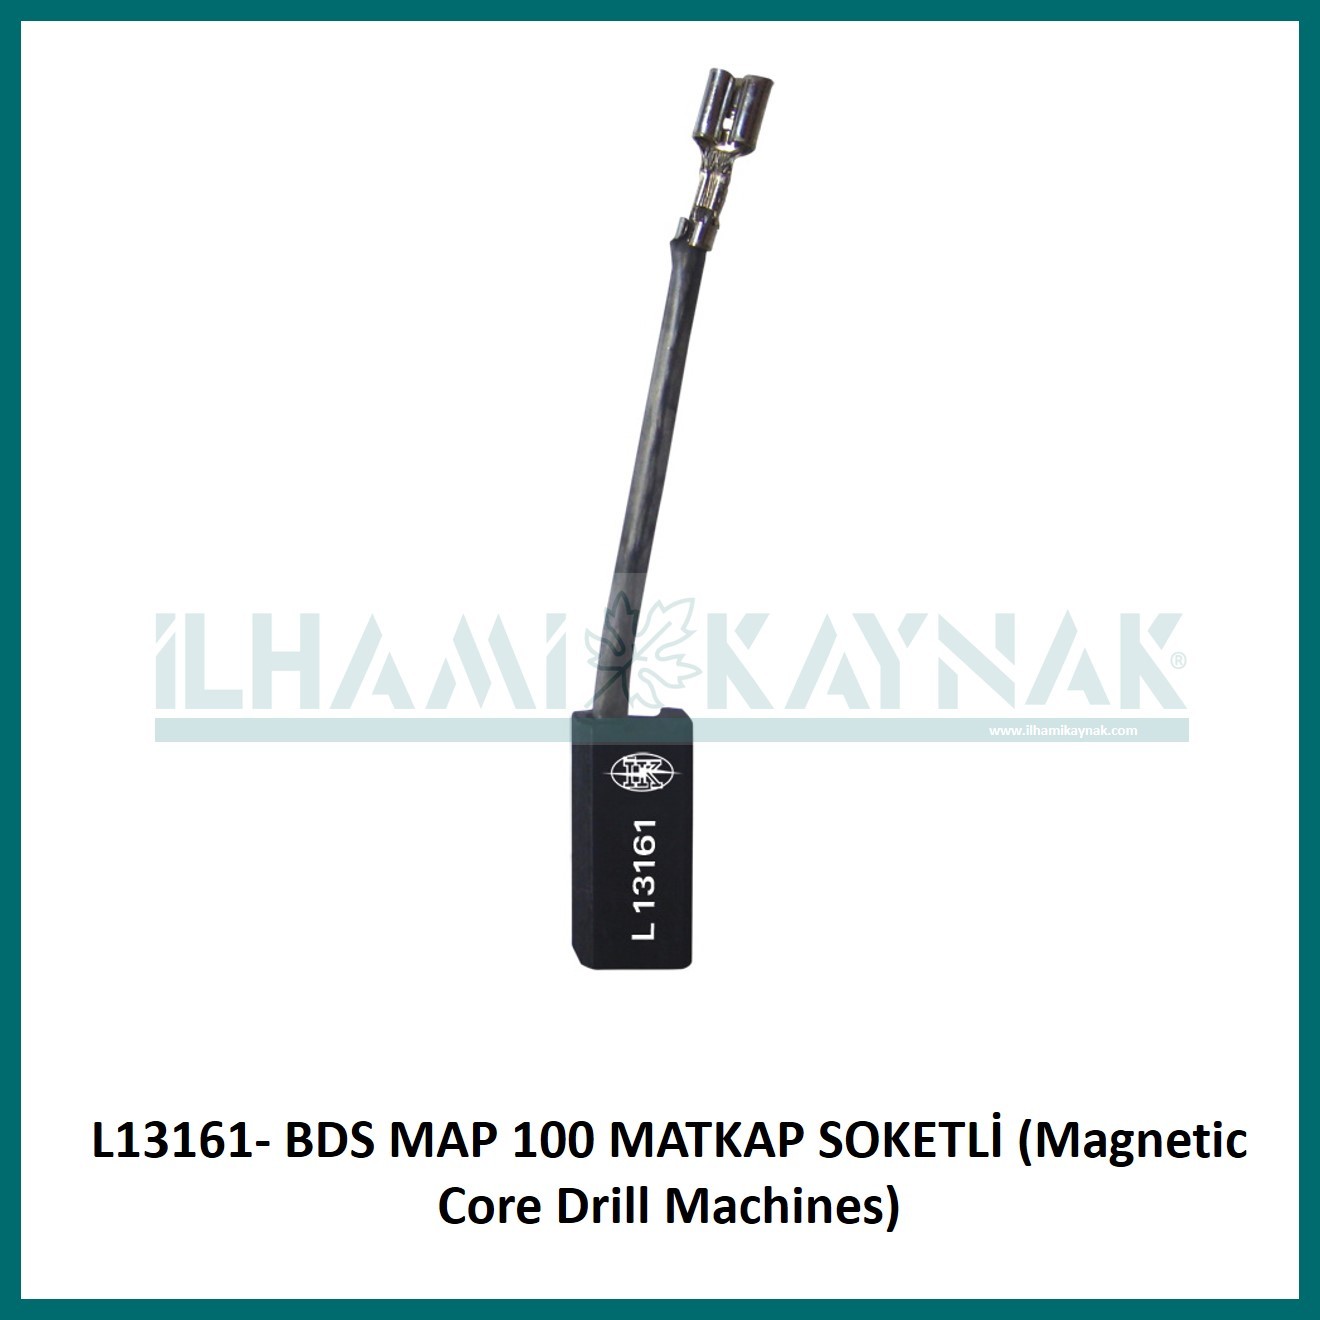 L13161- BDS MAP 100 MATKAP SOKETLİ (Magnetic Core Drill Machines) - 6.2*10*18 mm - Minimum Satın Alım: 10 Adet.